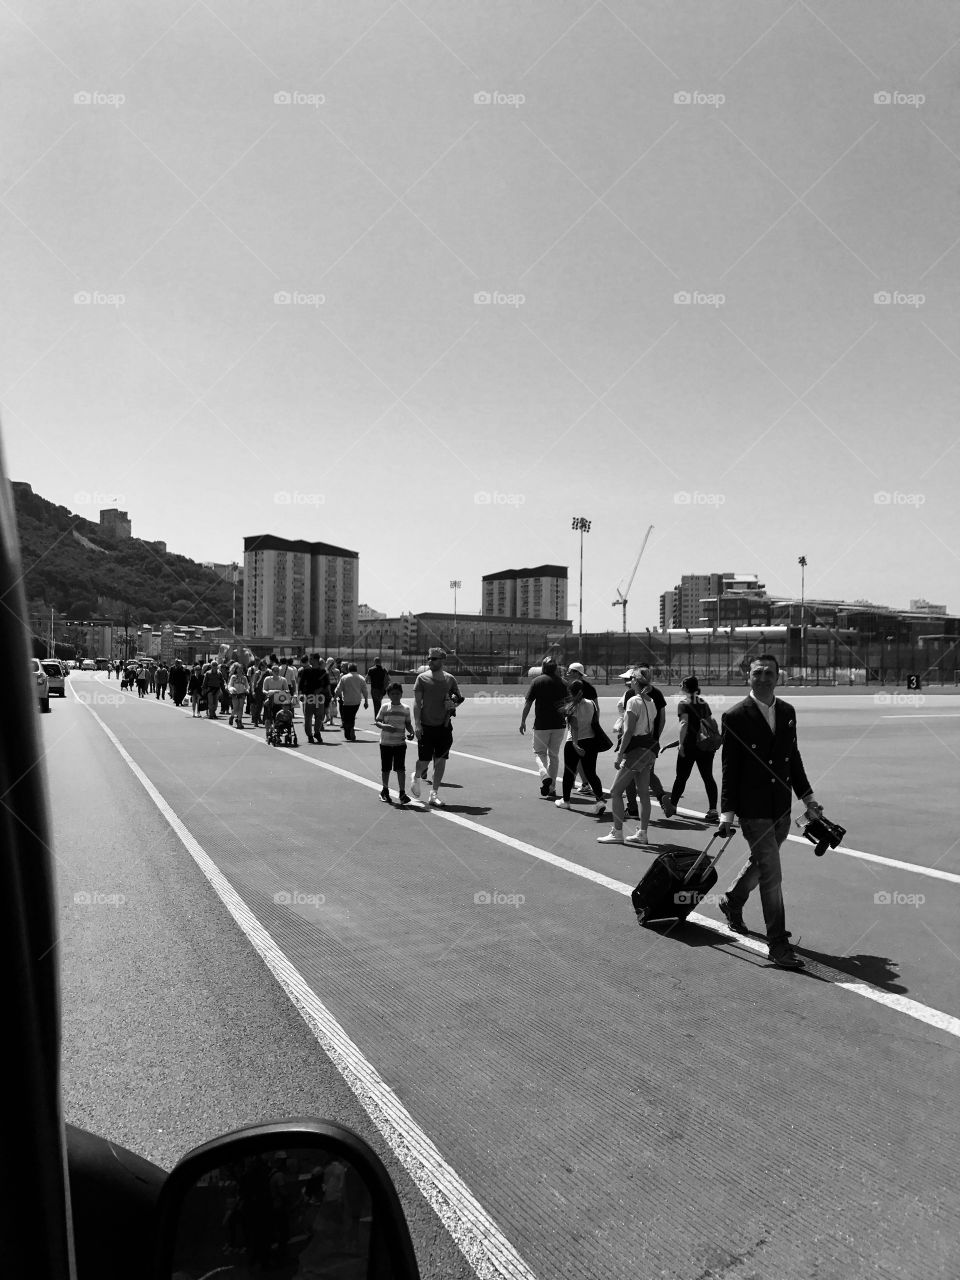 Runway people crossing #blackandwhite #airlines #travel traveling 